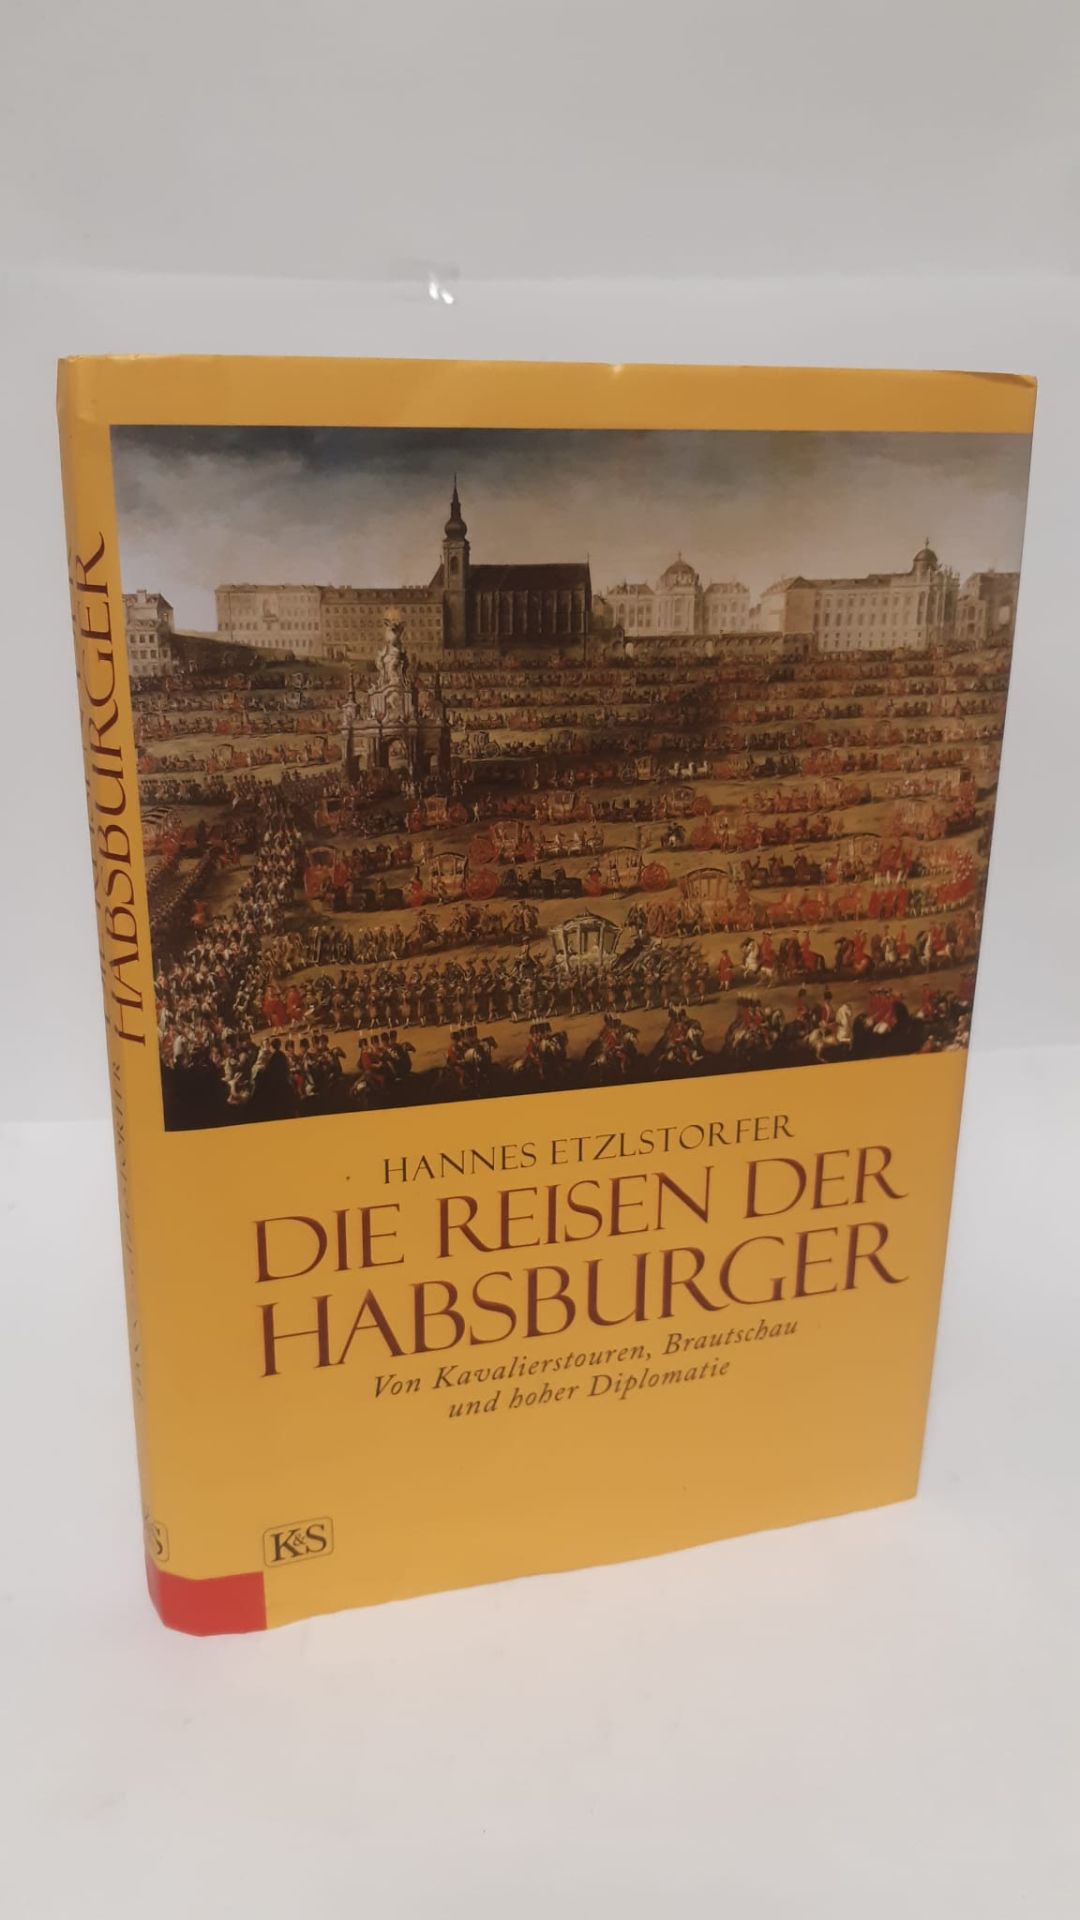 Die Reisen der Habsburger : von Kavalierstouren, Brautschau und hoher Diplomatie. - Etzlstorfer, Hannes